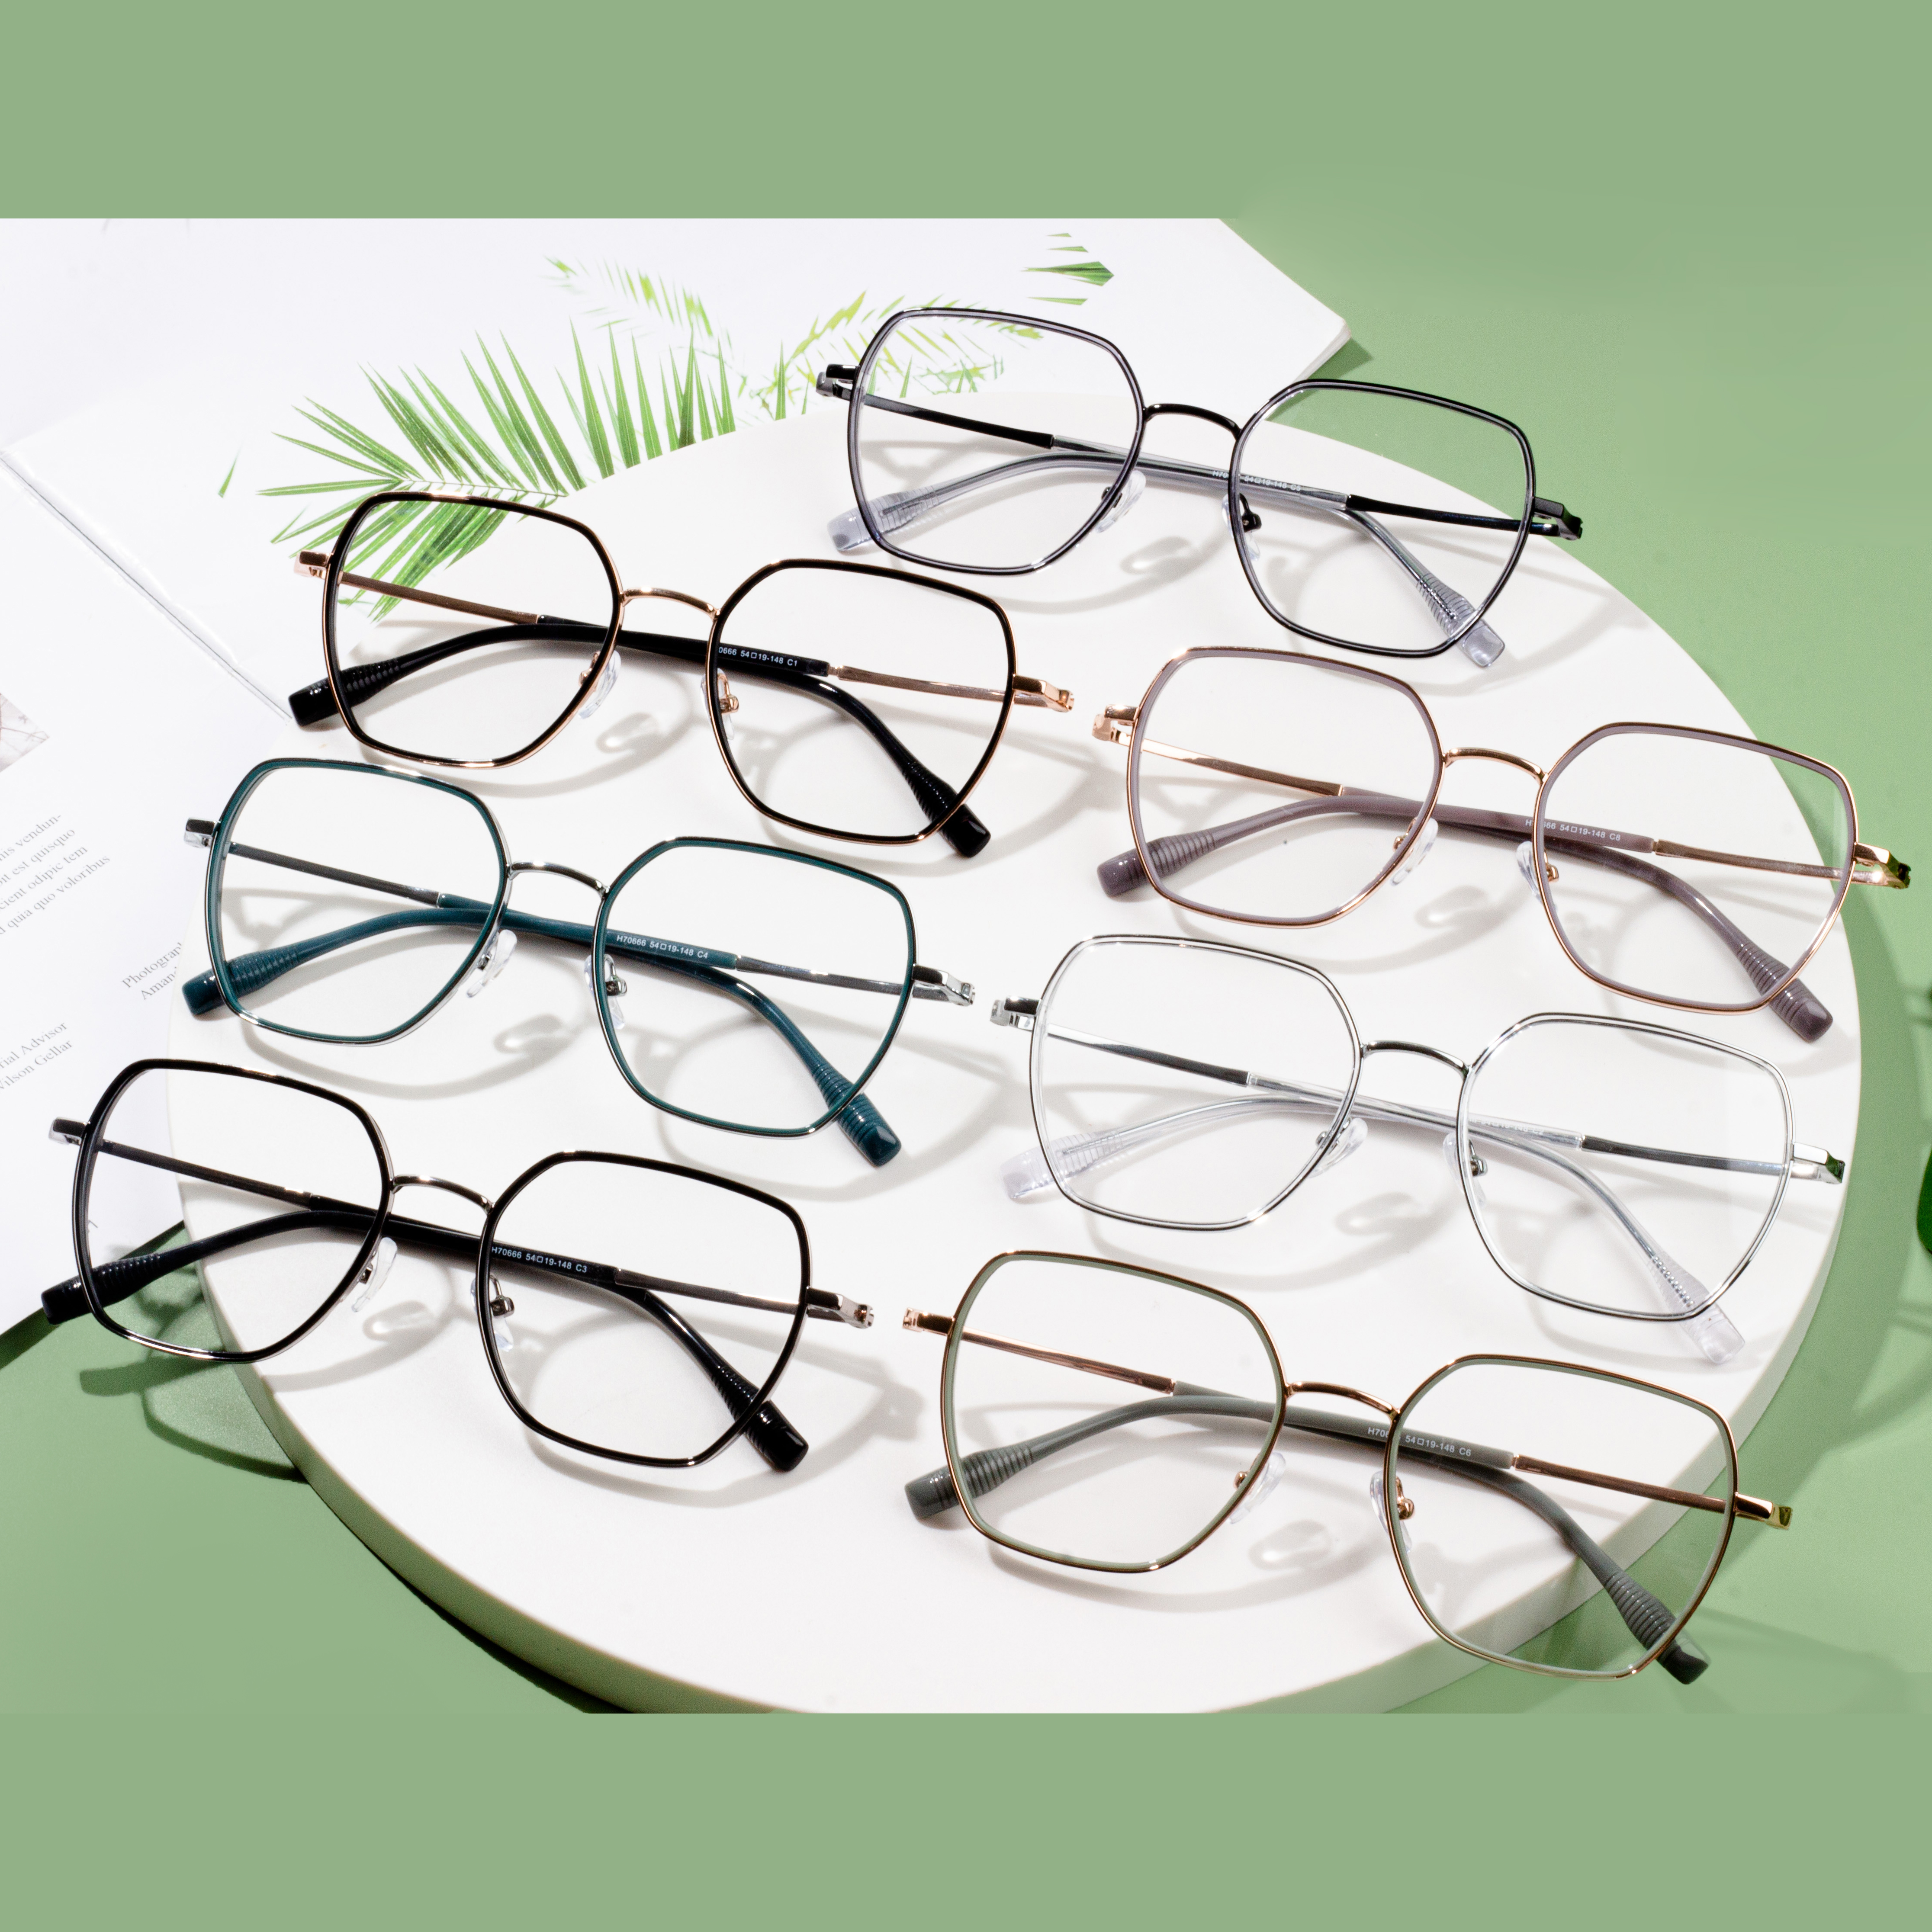 grossist tillverkare av glasögon optiska bågar